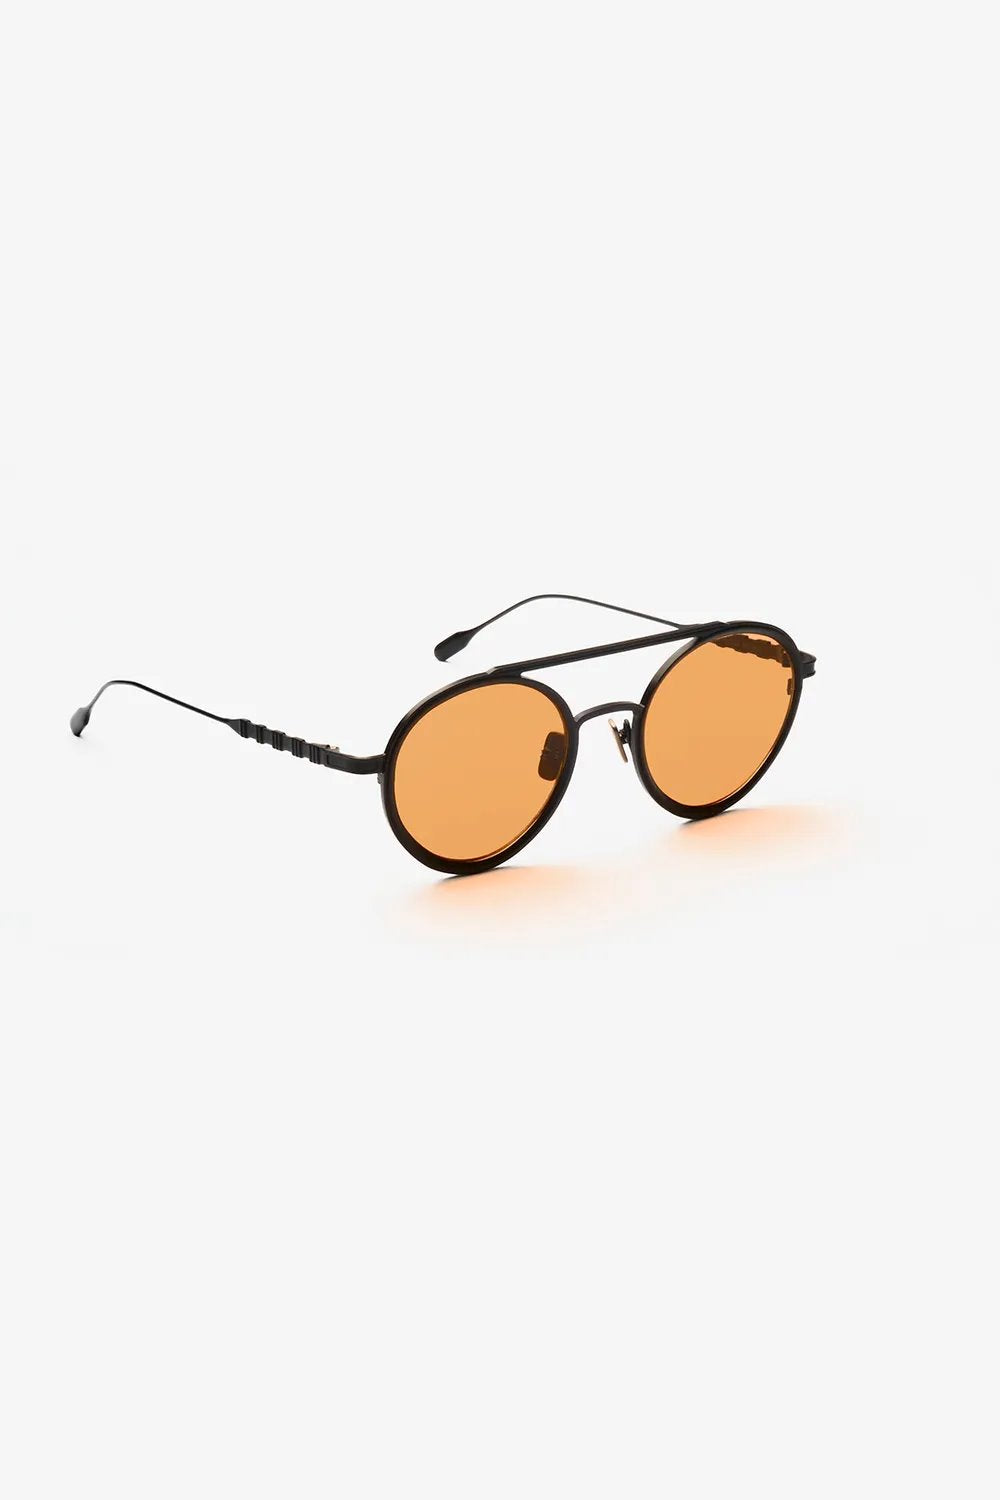 Capote - CC08 Sunglasses Capote 